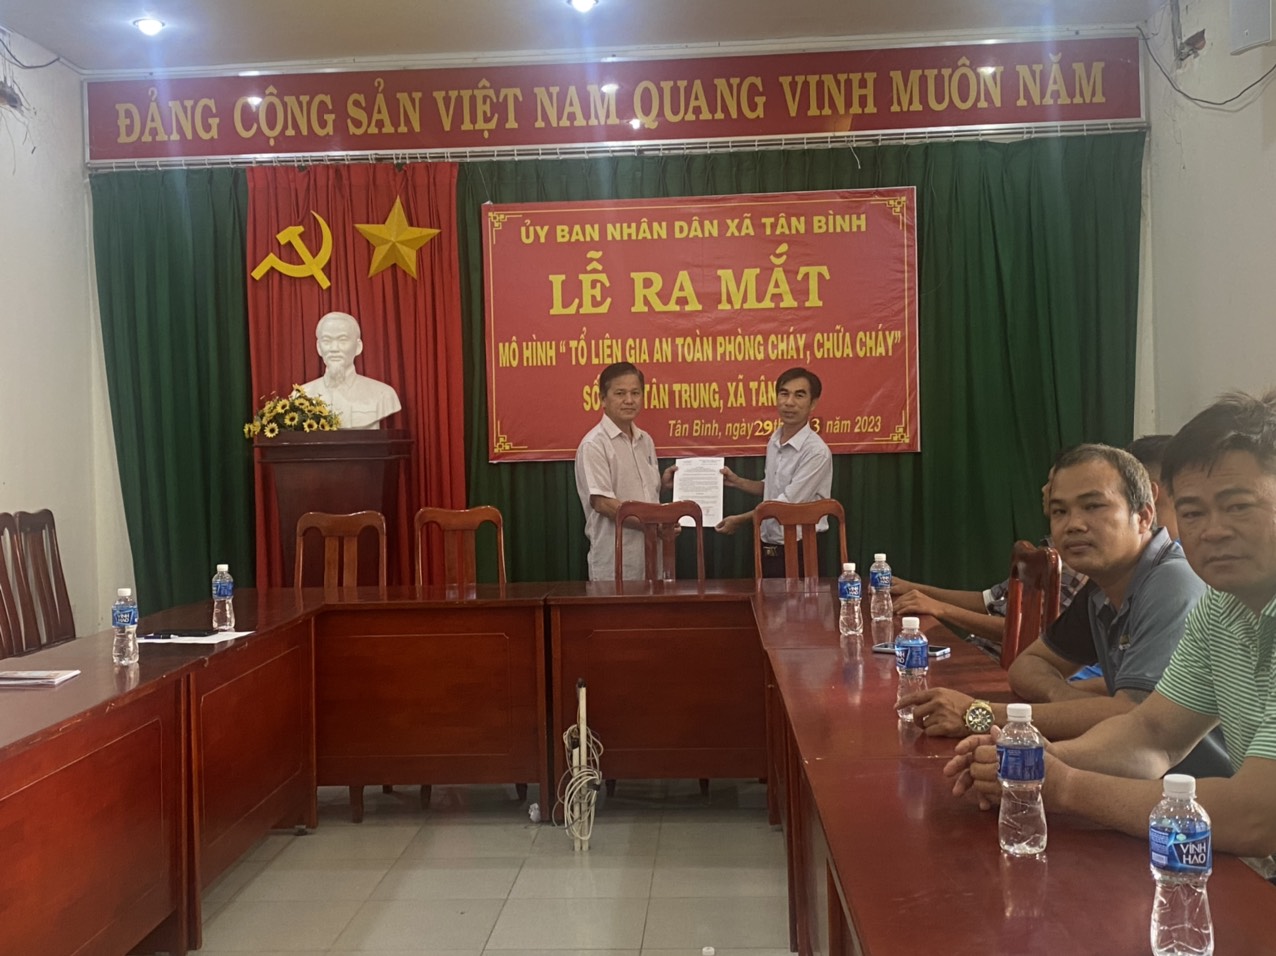 Ảnh: Ông Nguyễn Thành Sơn PCT. UBND xã trao Quyết định thành lập cho “Tổ liên gia an toàn phòng cháy, chữa cháy”